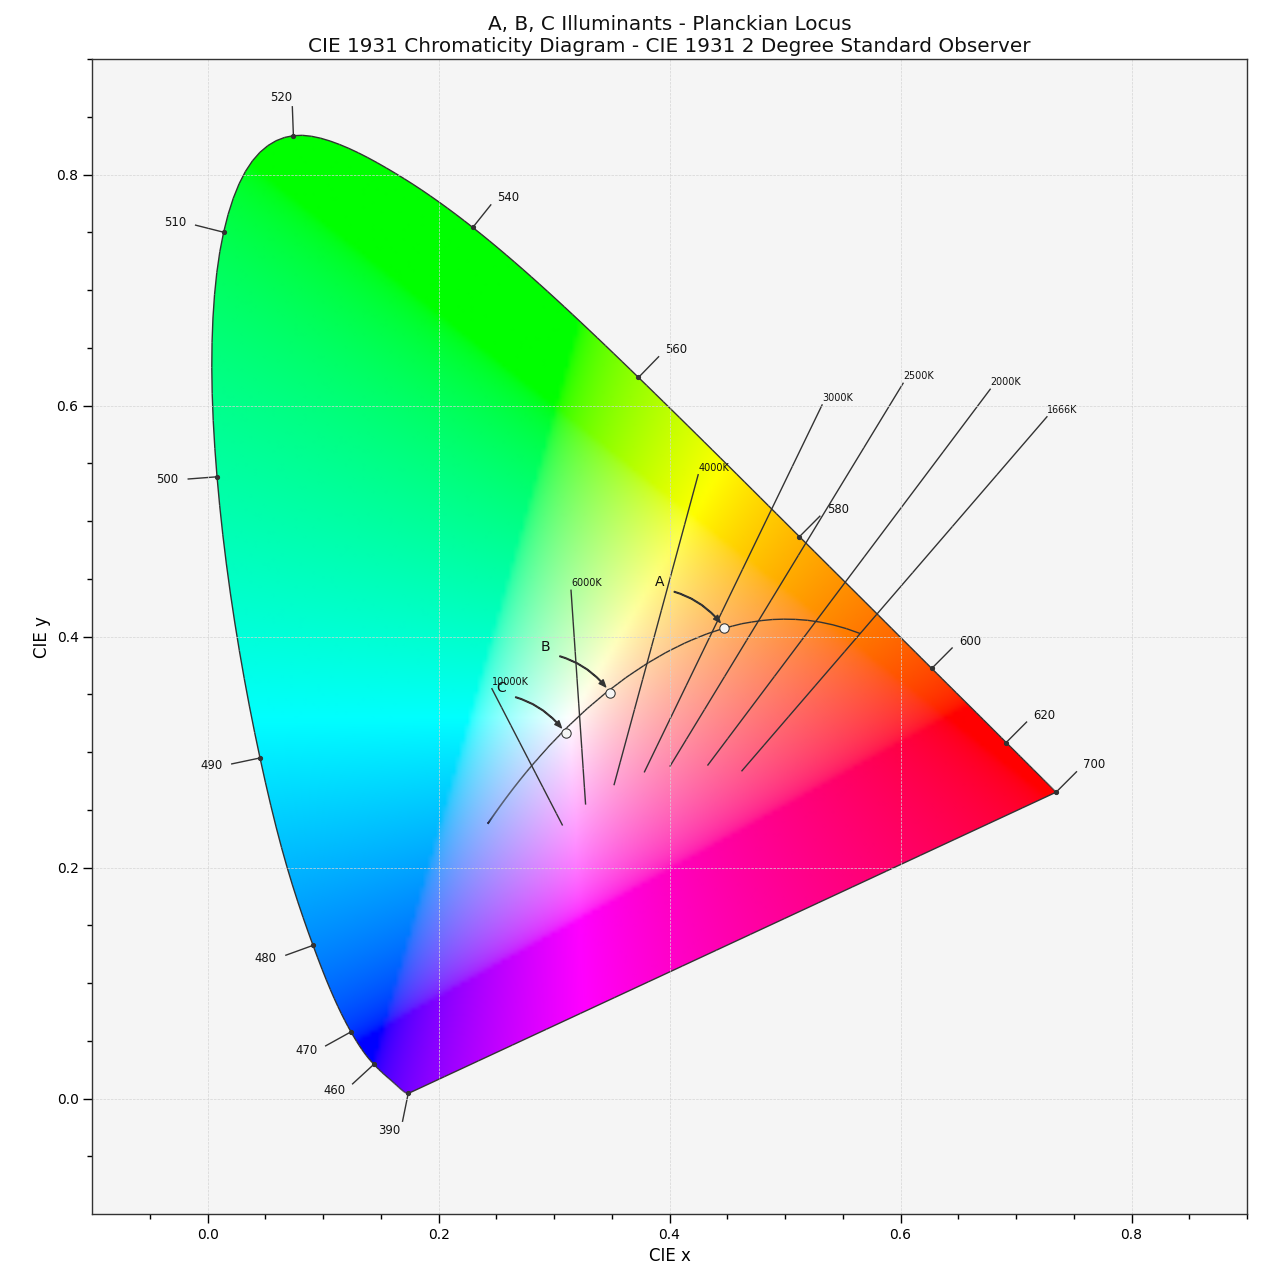 plot_planckian_locus_in_chromaticity_diagram